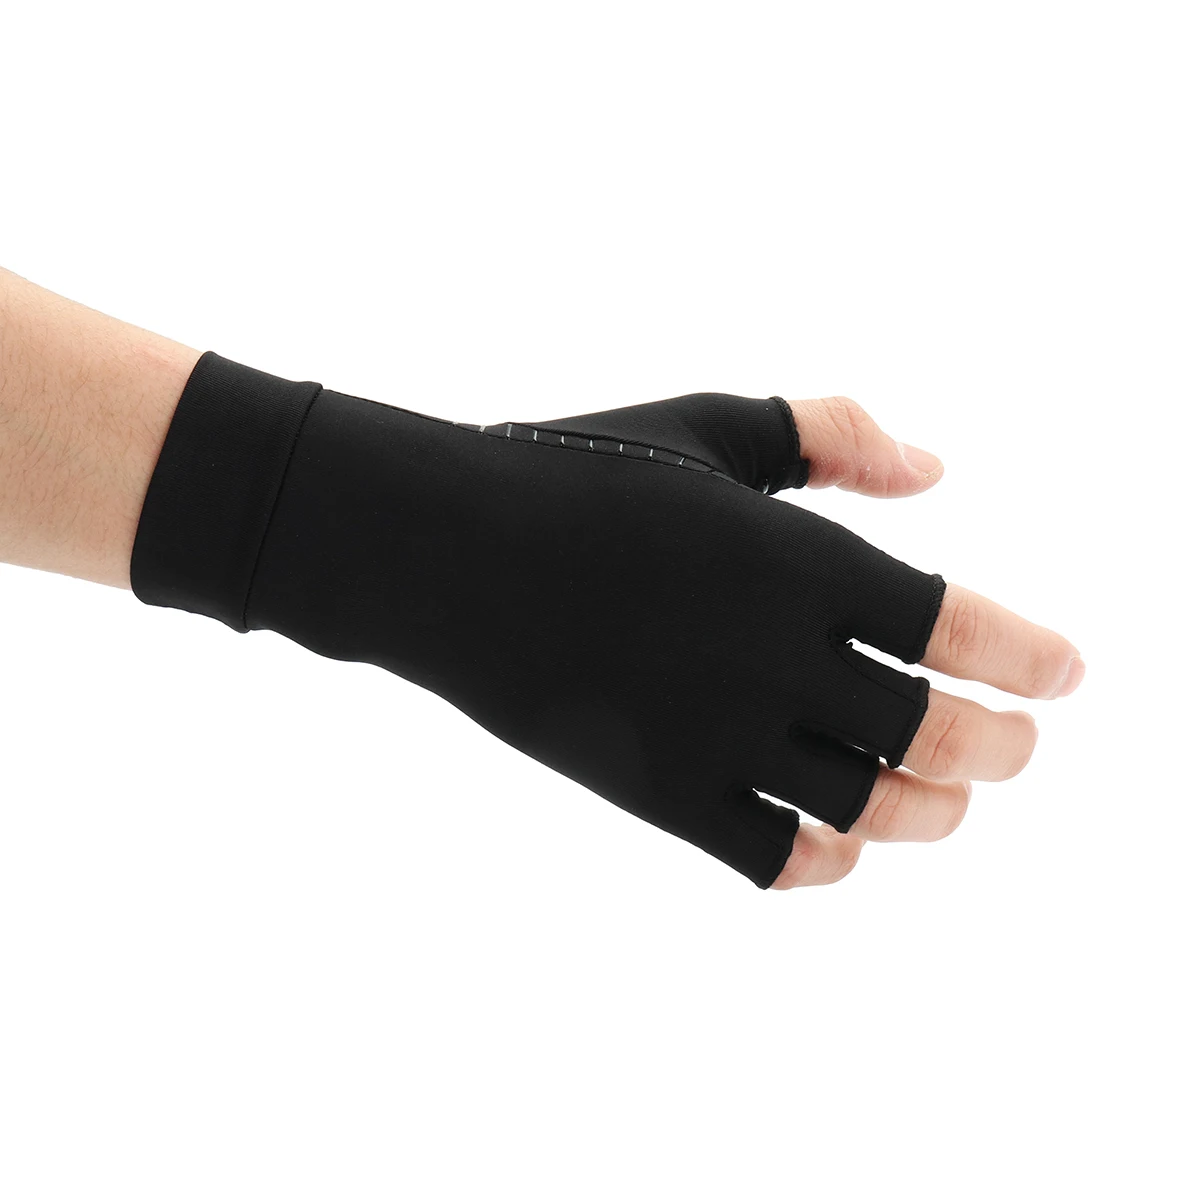 Женщины Мужчины руки перчатки при артрите медная терапия компрессионные перчатки циркуляционный захват руки артрита боли в суставах облегчение